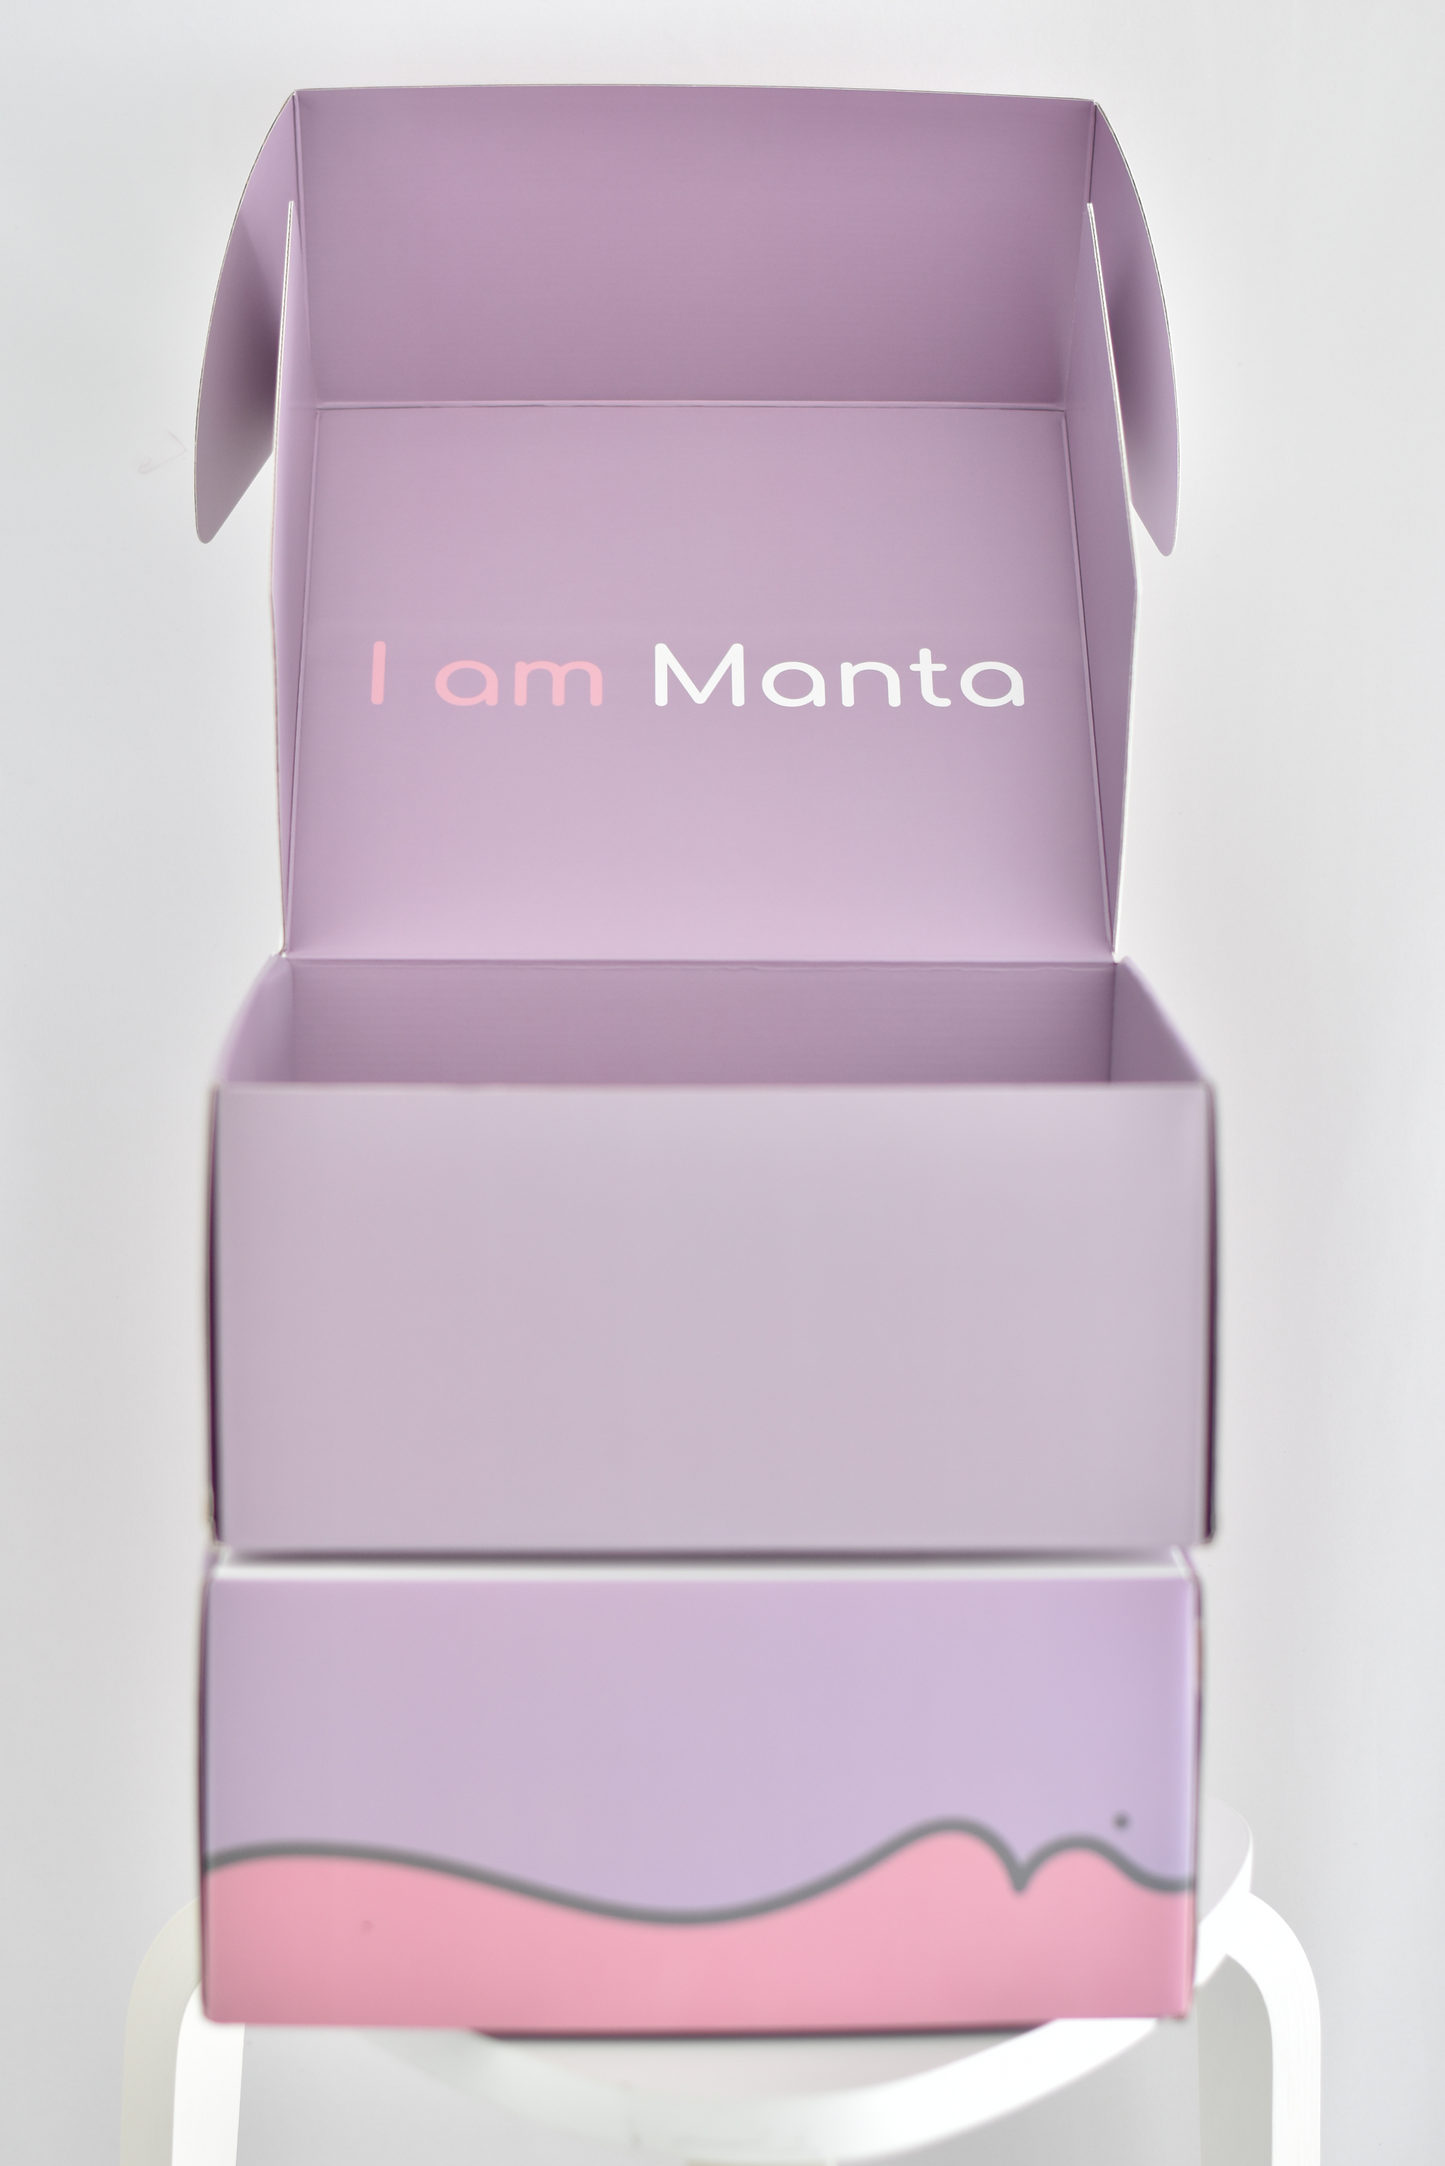 Manta Gift Box